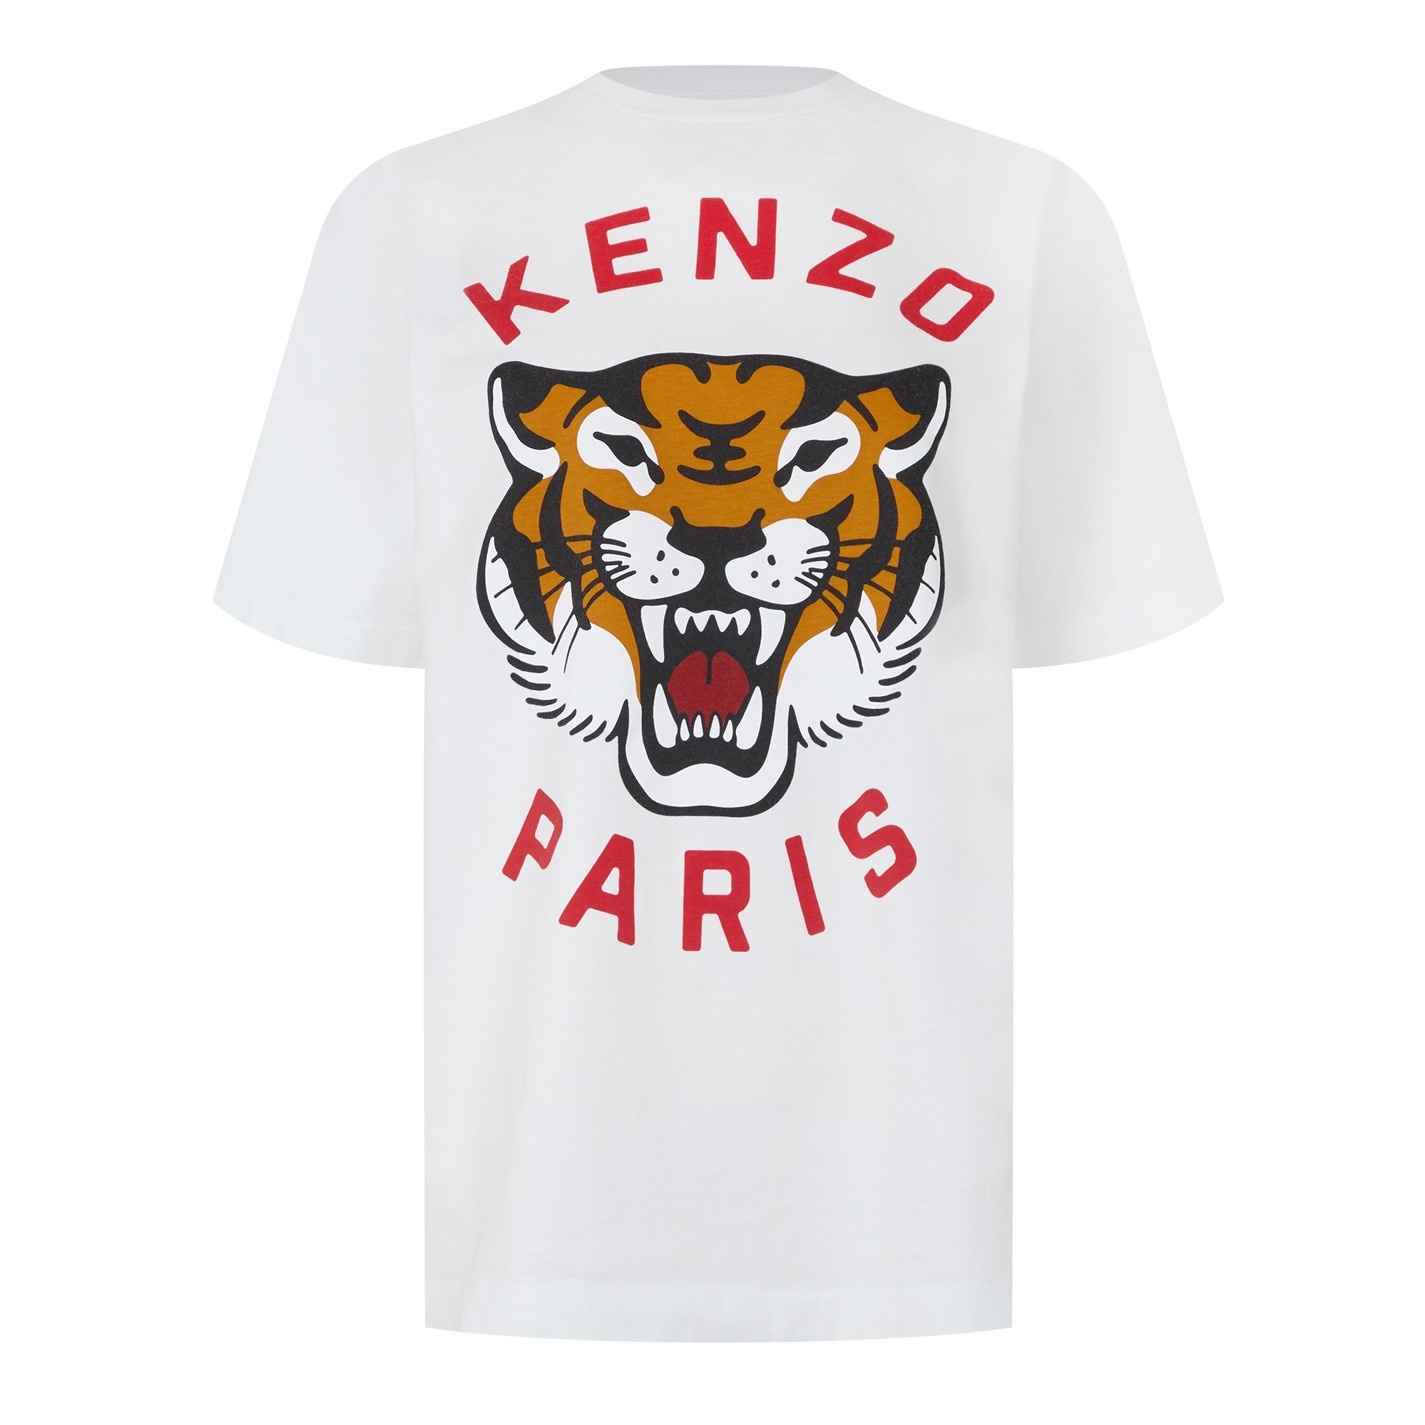 KNZO Tiger T-Shirt Sn42 - 1